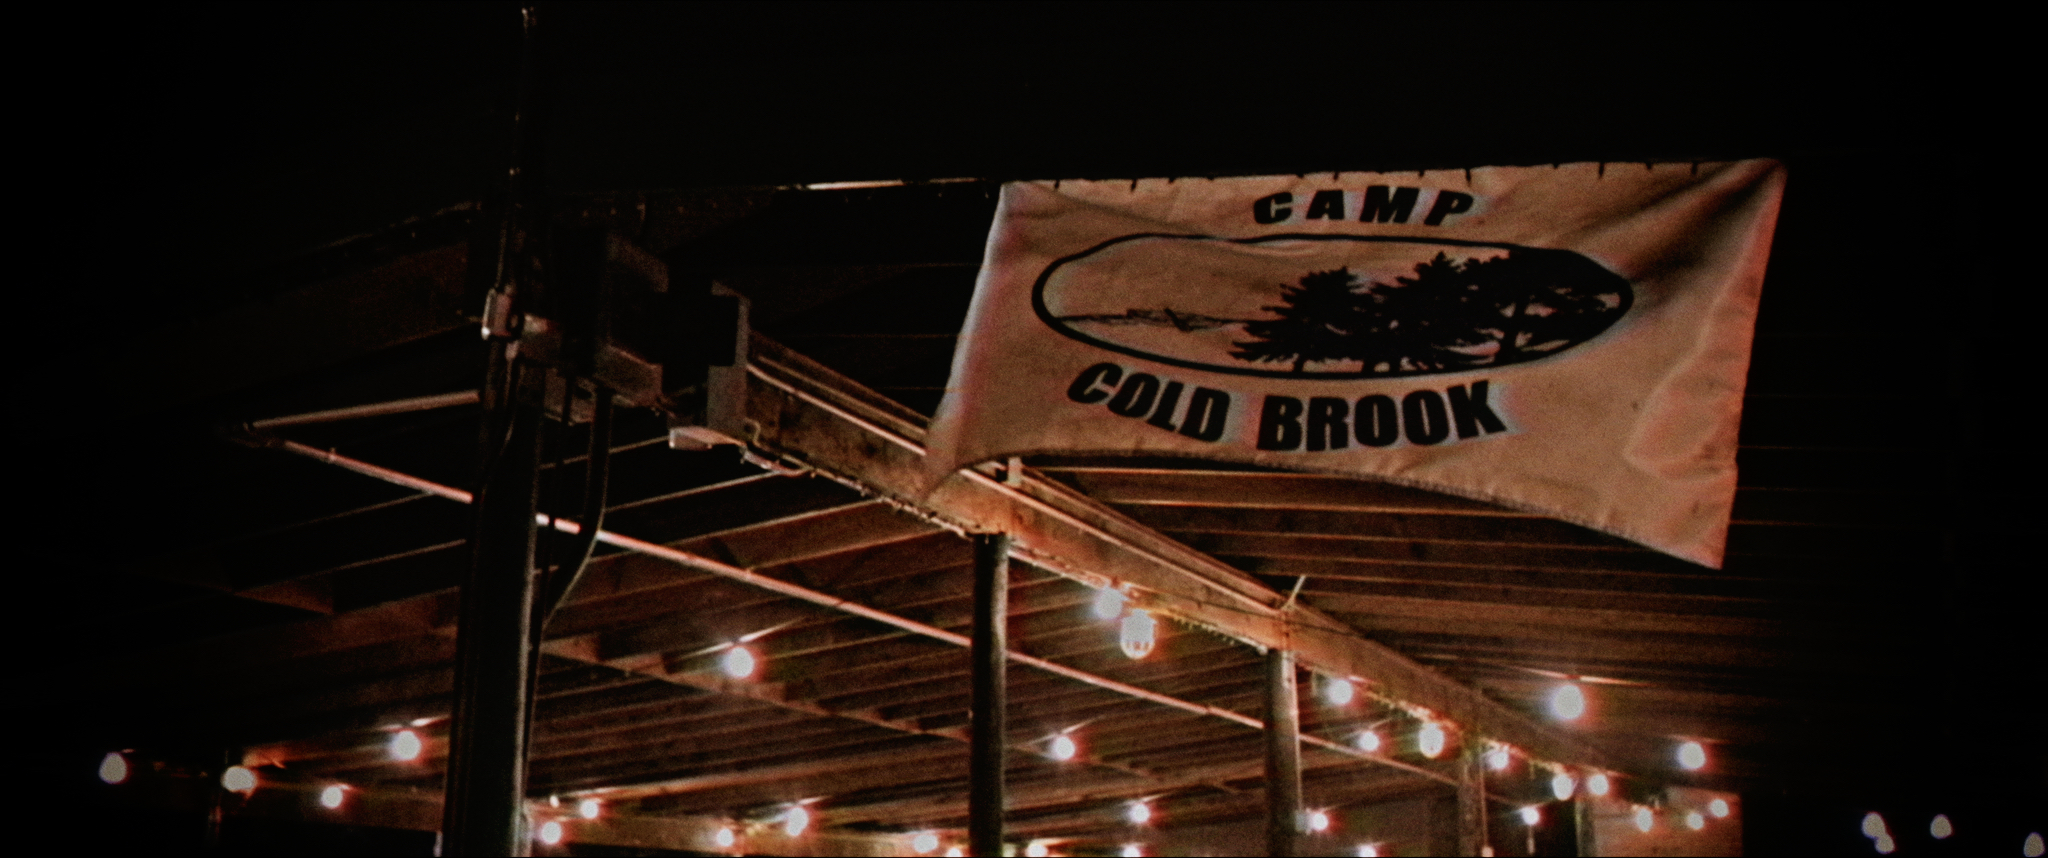 Camp Cold Brook (2018) Screenshot 3